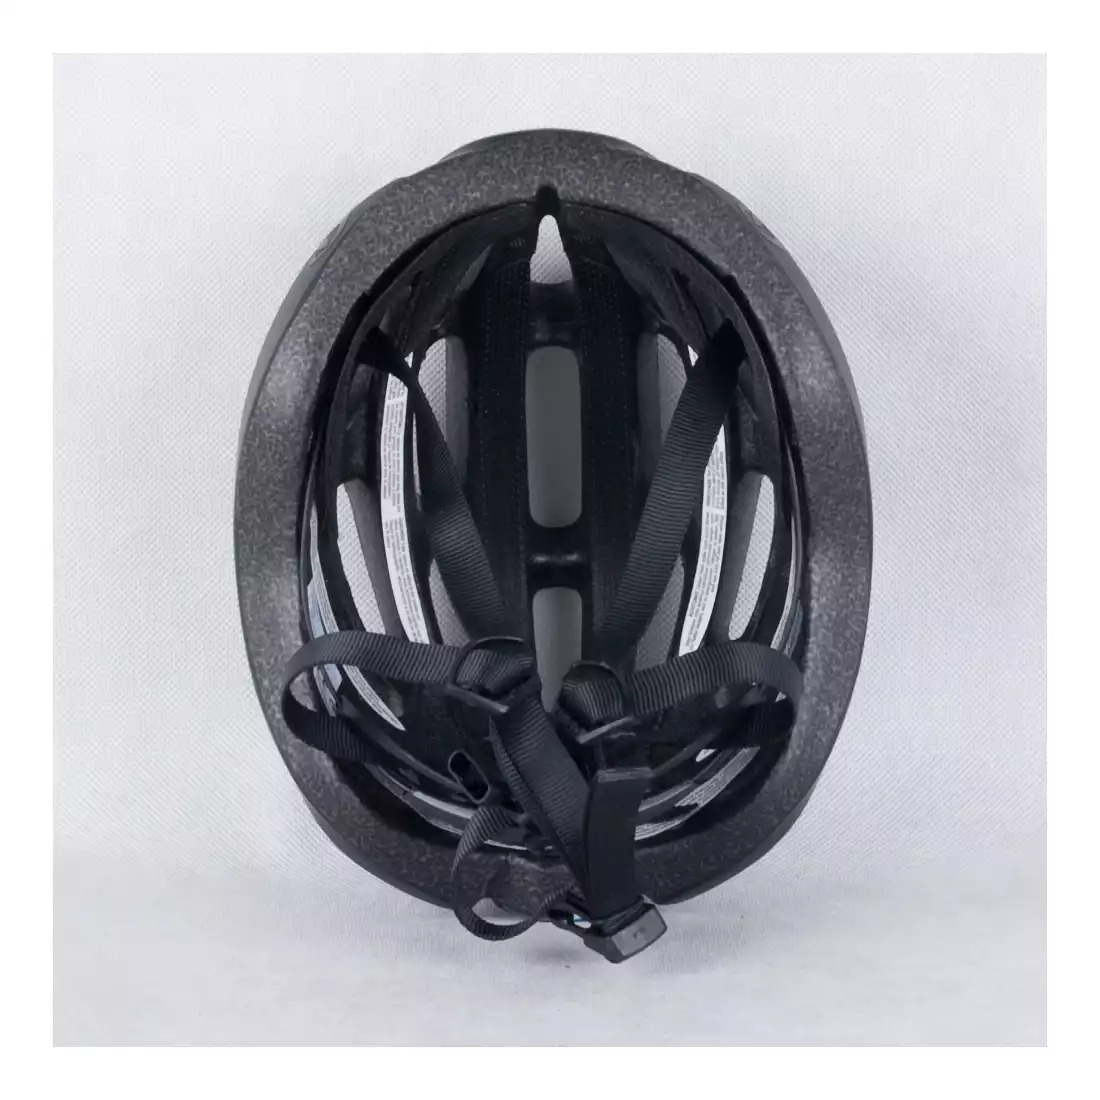 GIRO FORAY - kask rowerowy czarny mat